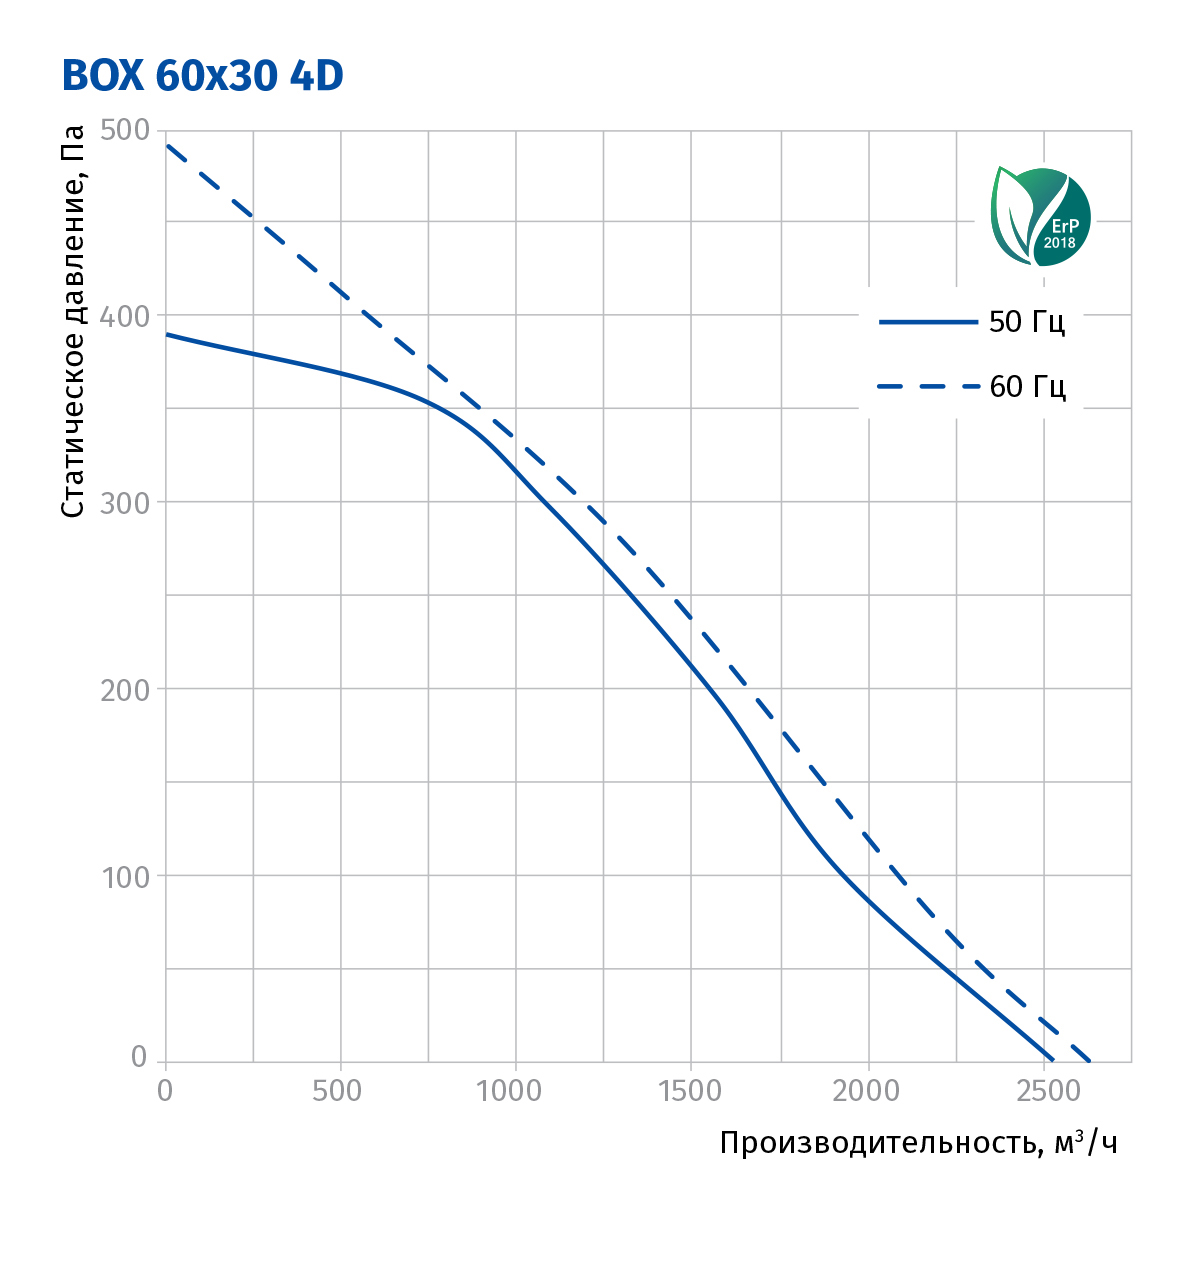 Blauberg Box 60x30 4D Диаграмма производительности